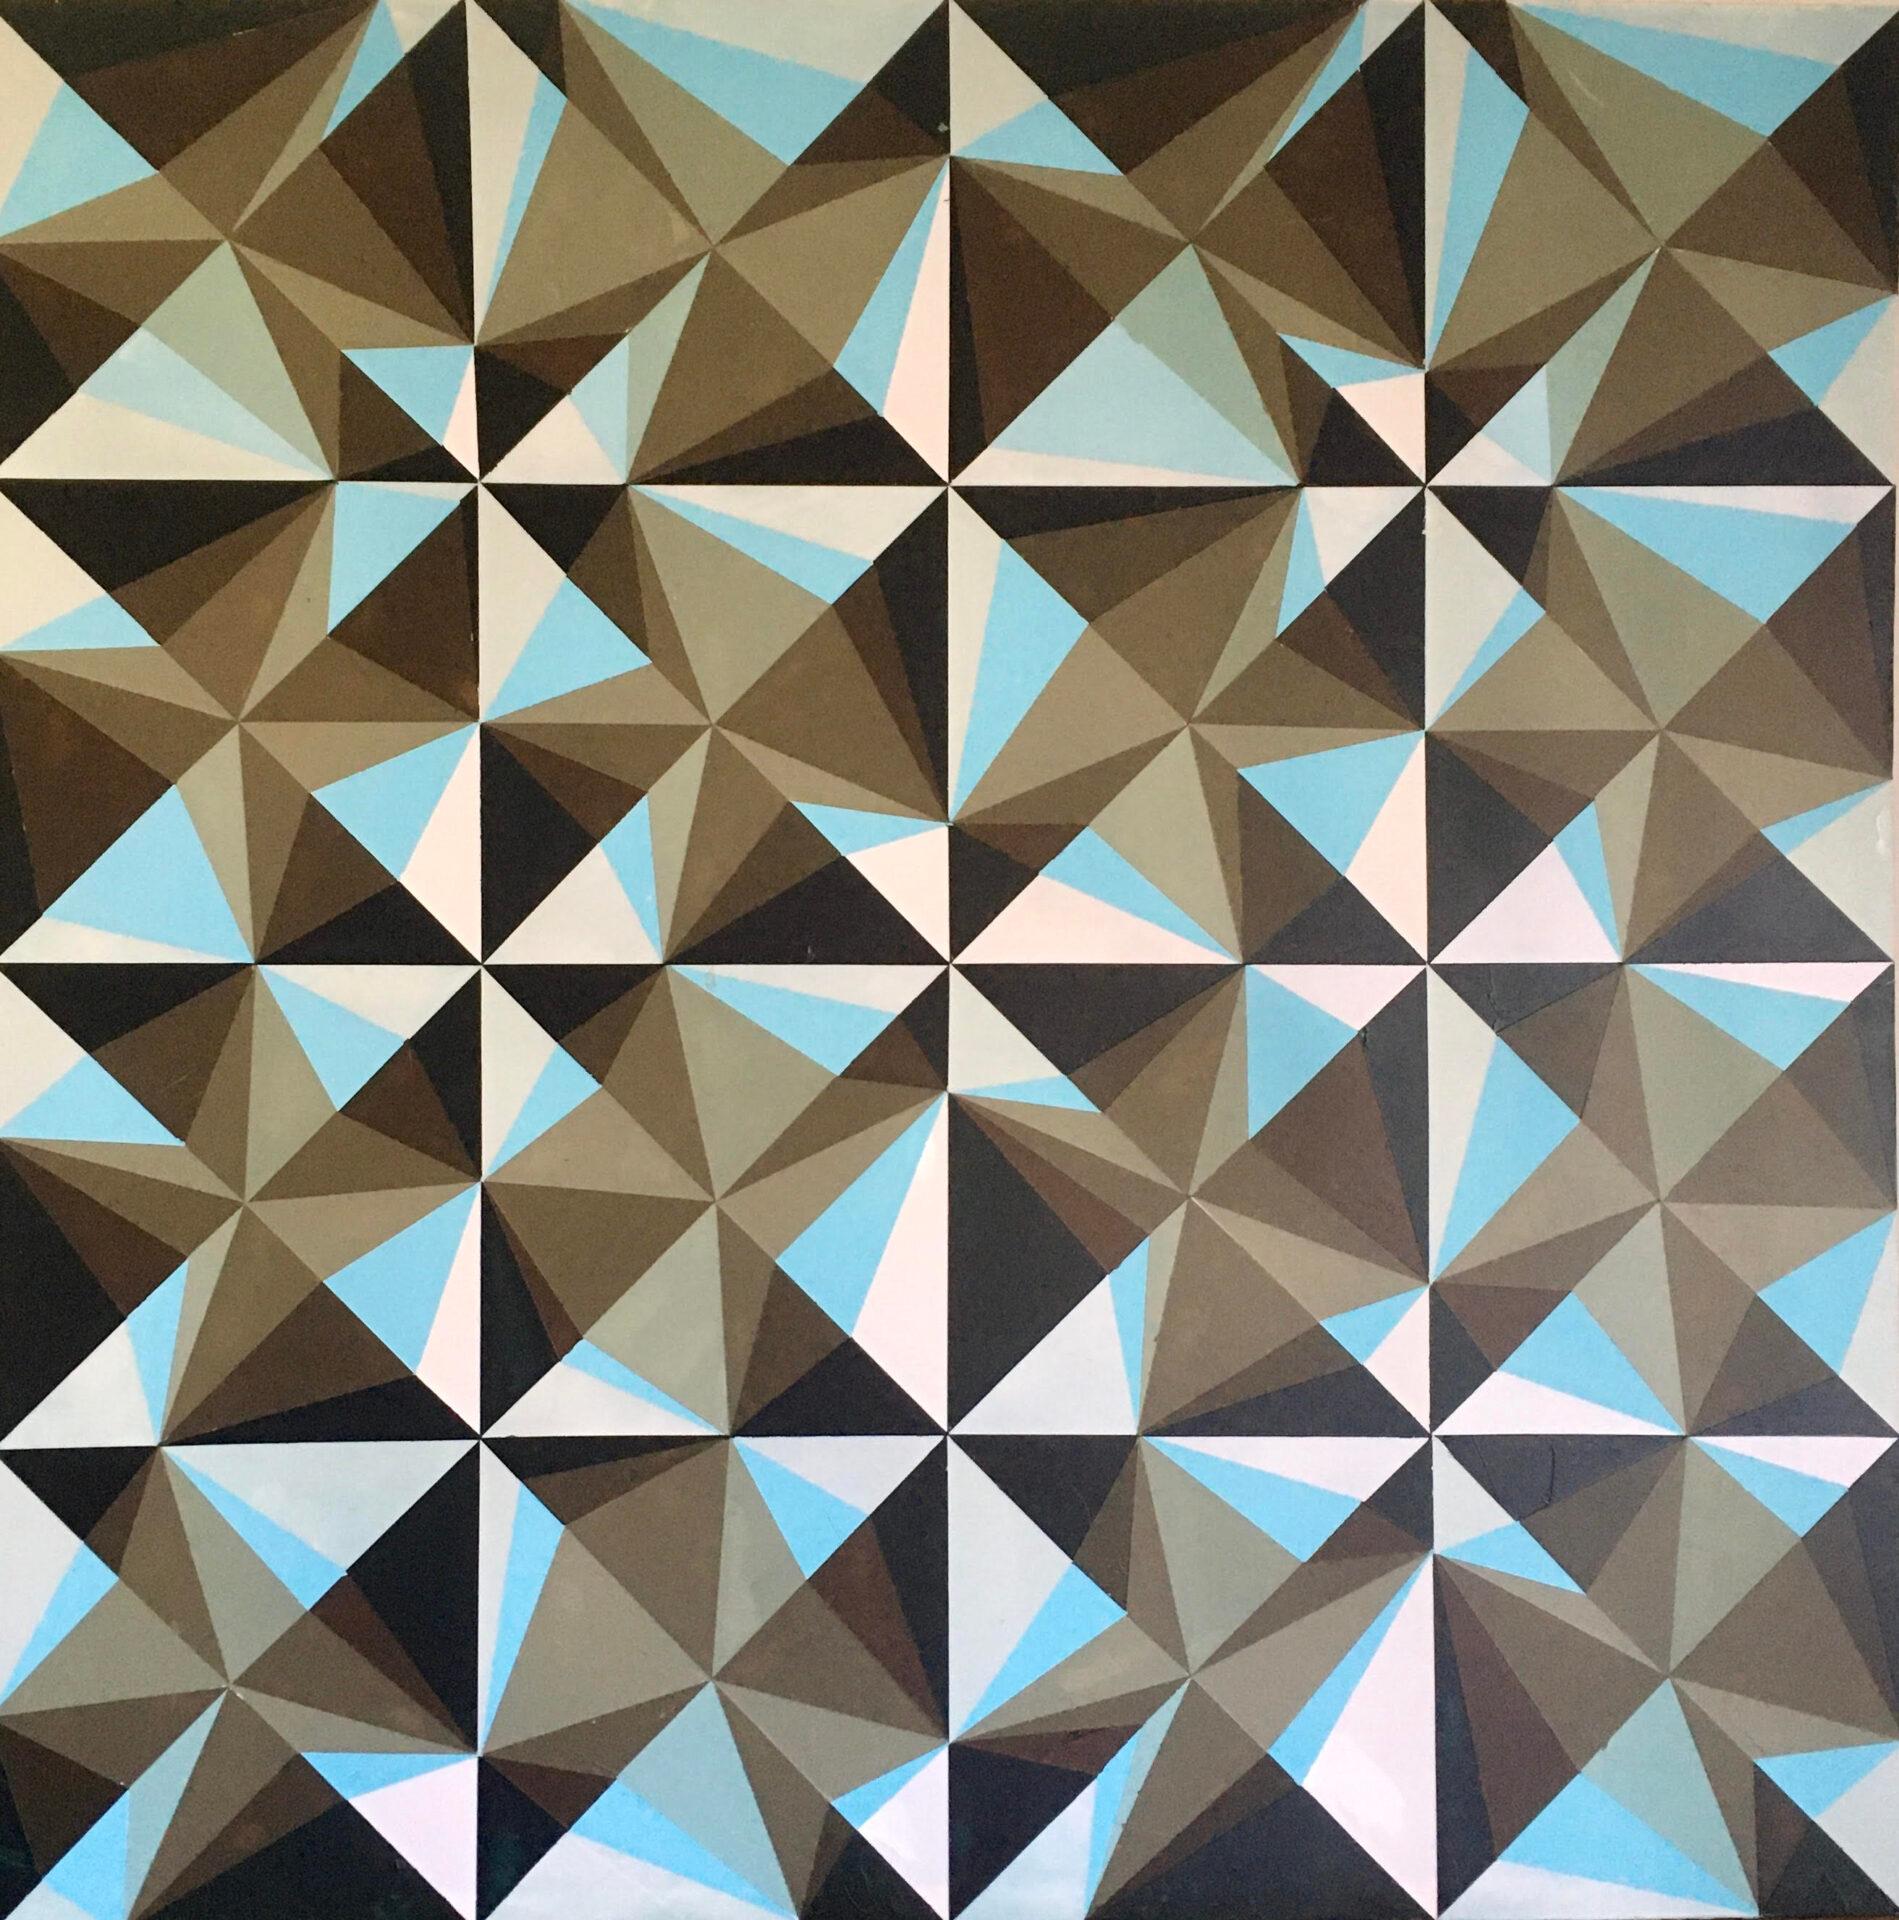 Playing with triangles - Art by Pilar Pérez Prado